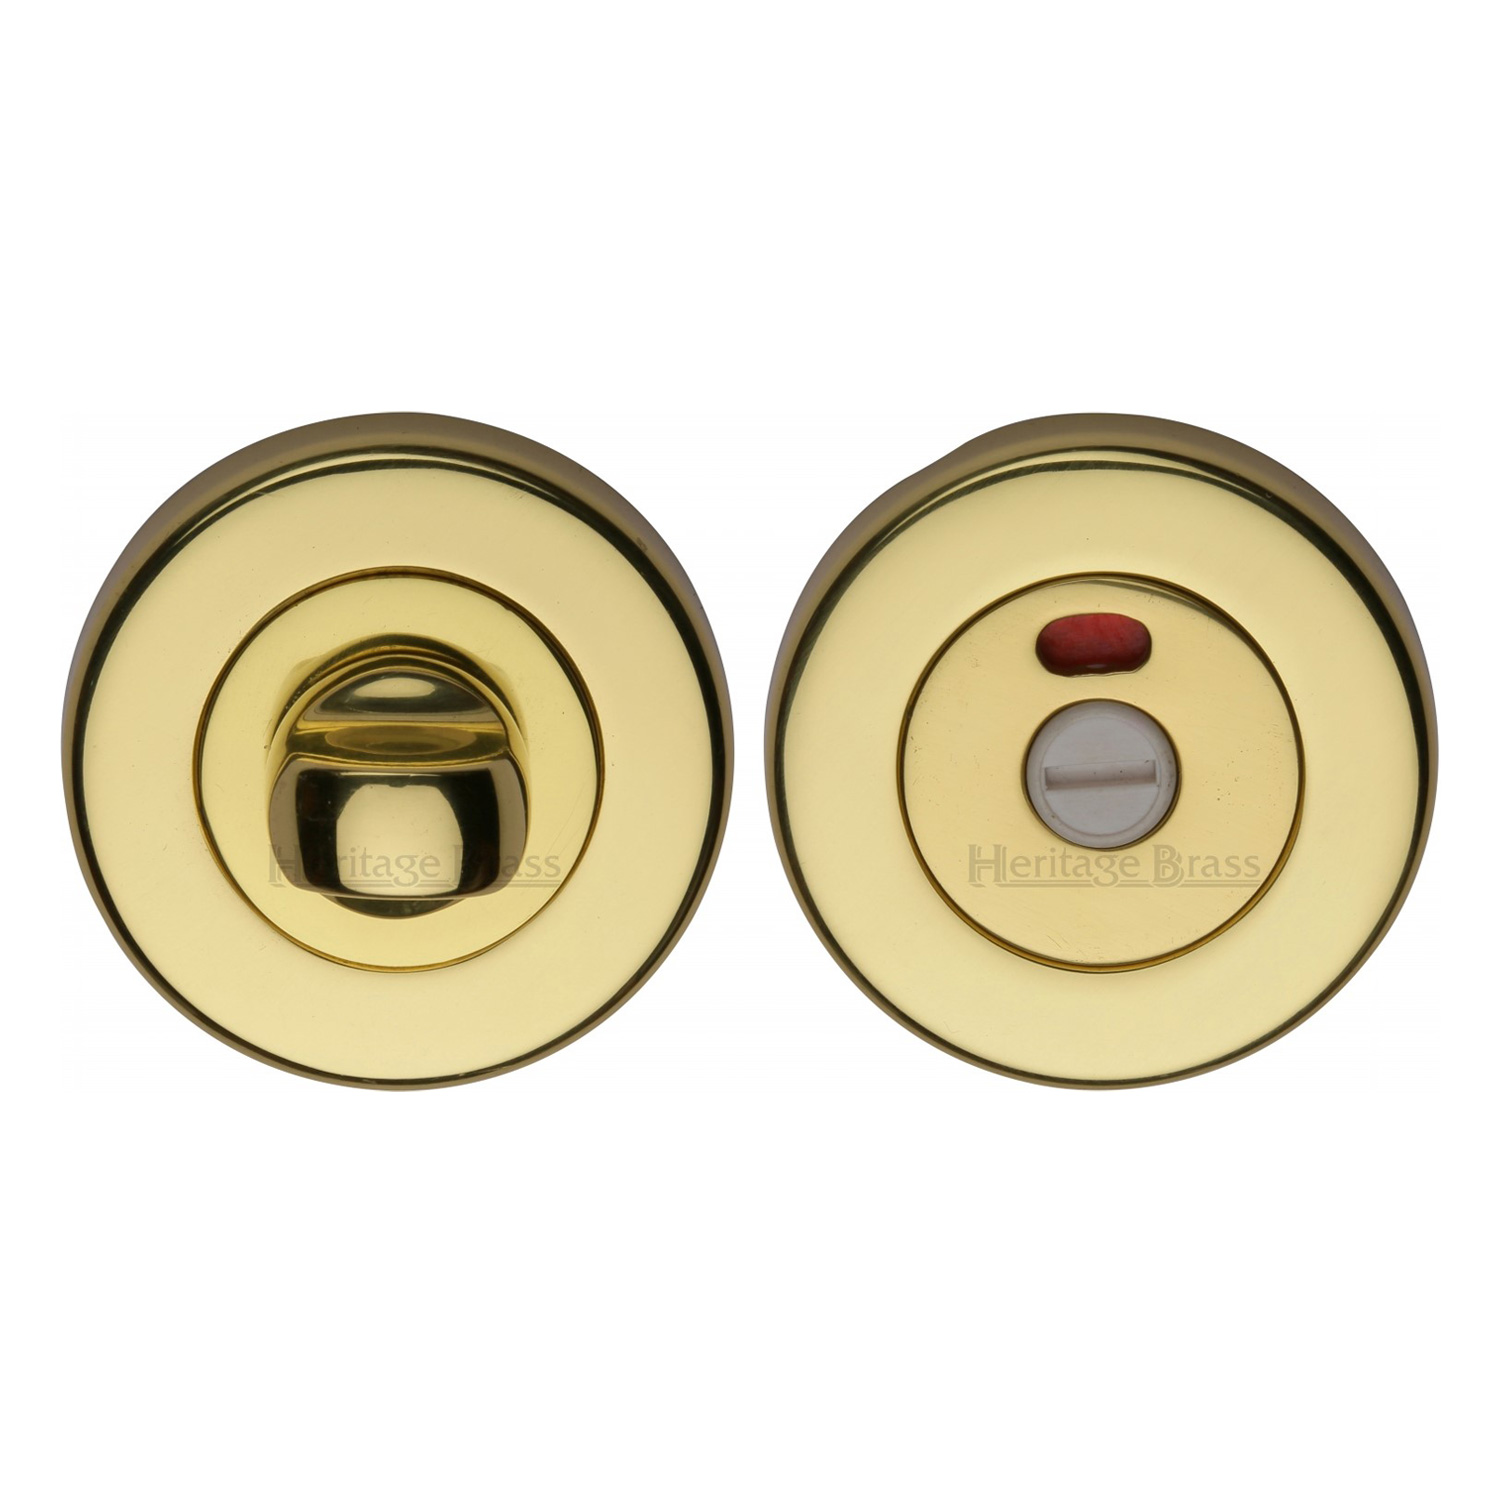 Heritage Brass Indicator Turn & Release for Bathroom Doors